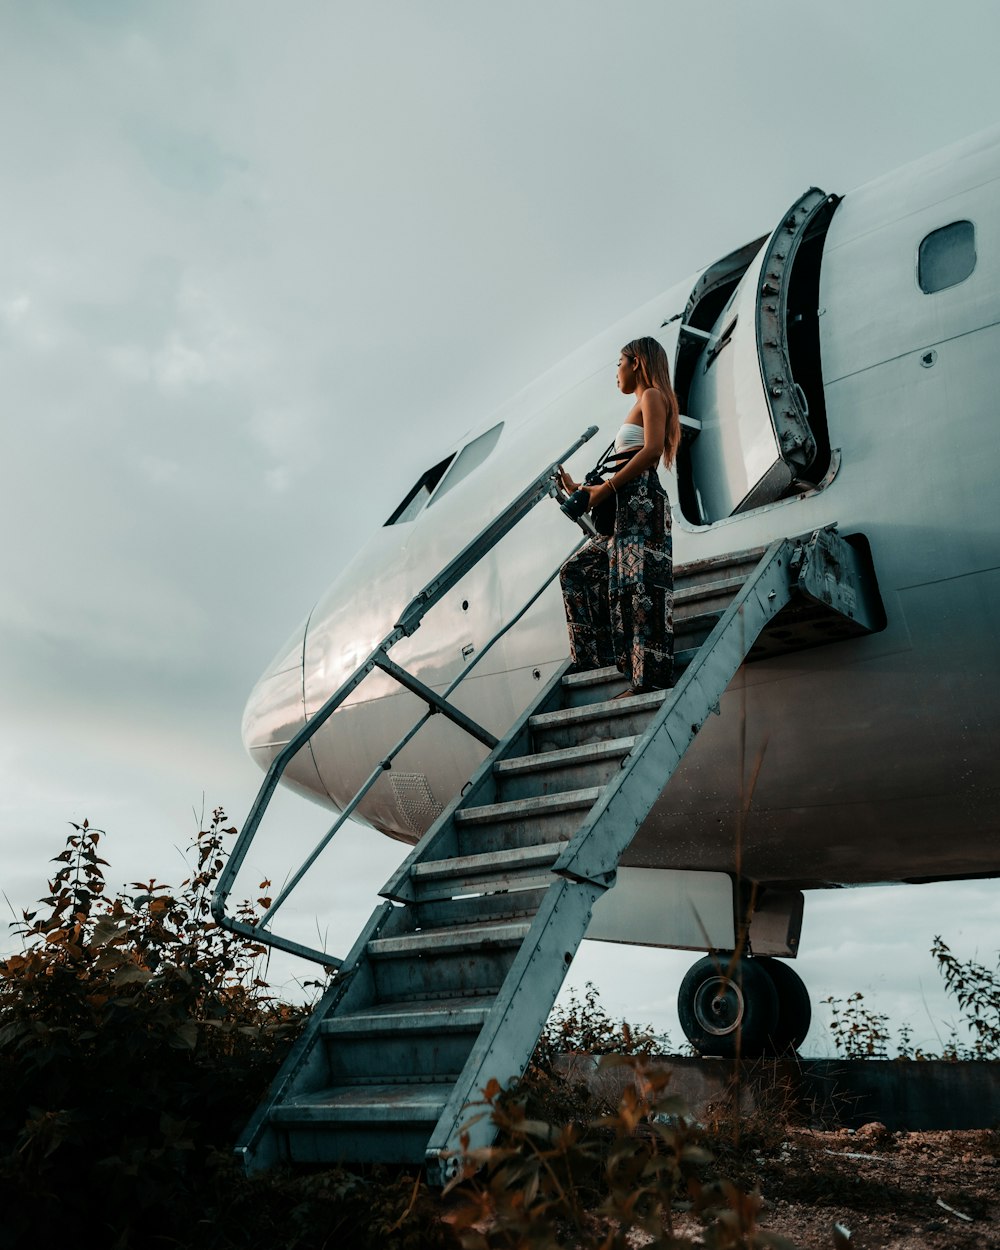 Una mujer parada en los escalones de un avión